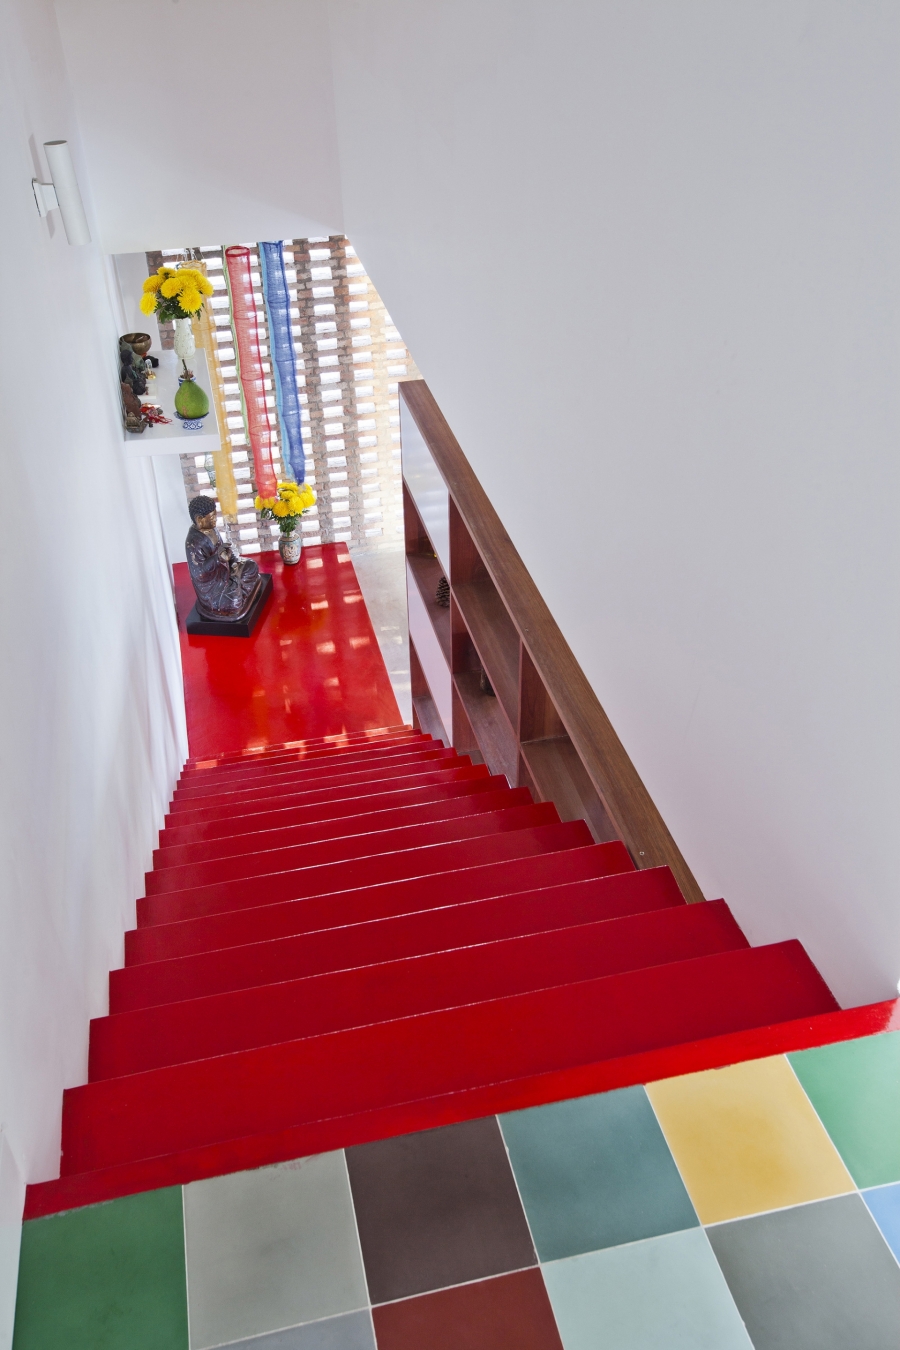 Chiếc cầu thang màu đỏ rực rỡ nối liền các tầng nhà với nhau tạo thành một điểm nhấn vô cùng bắt mắt.